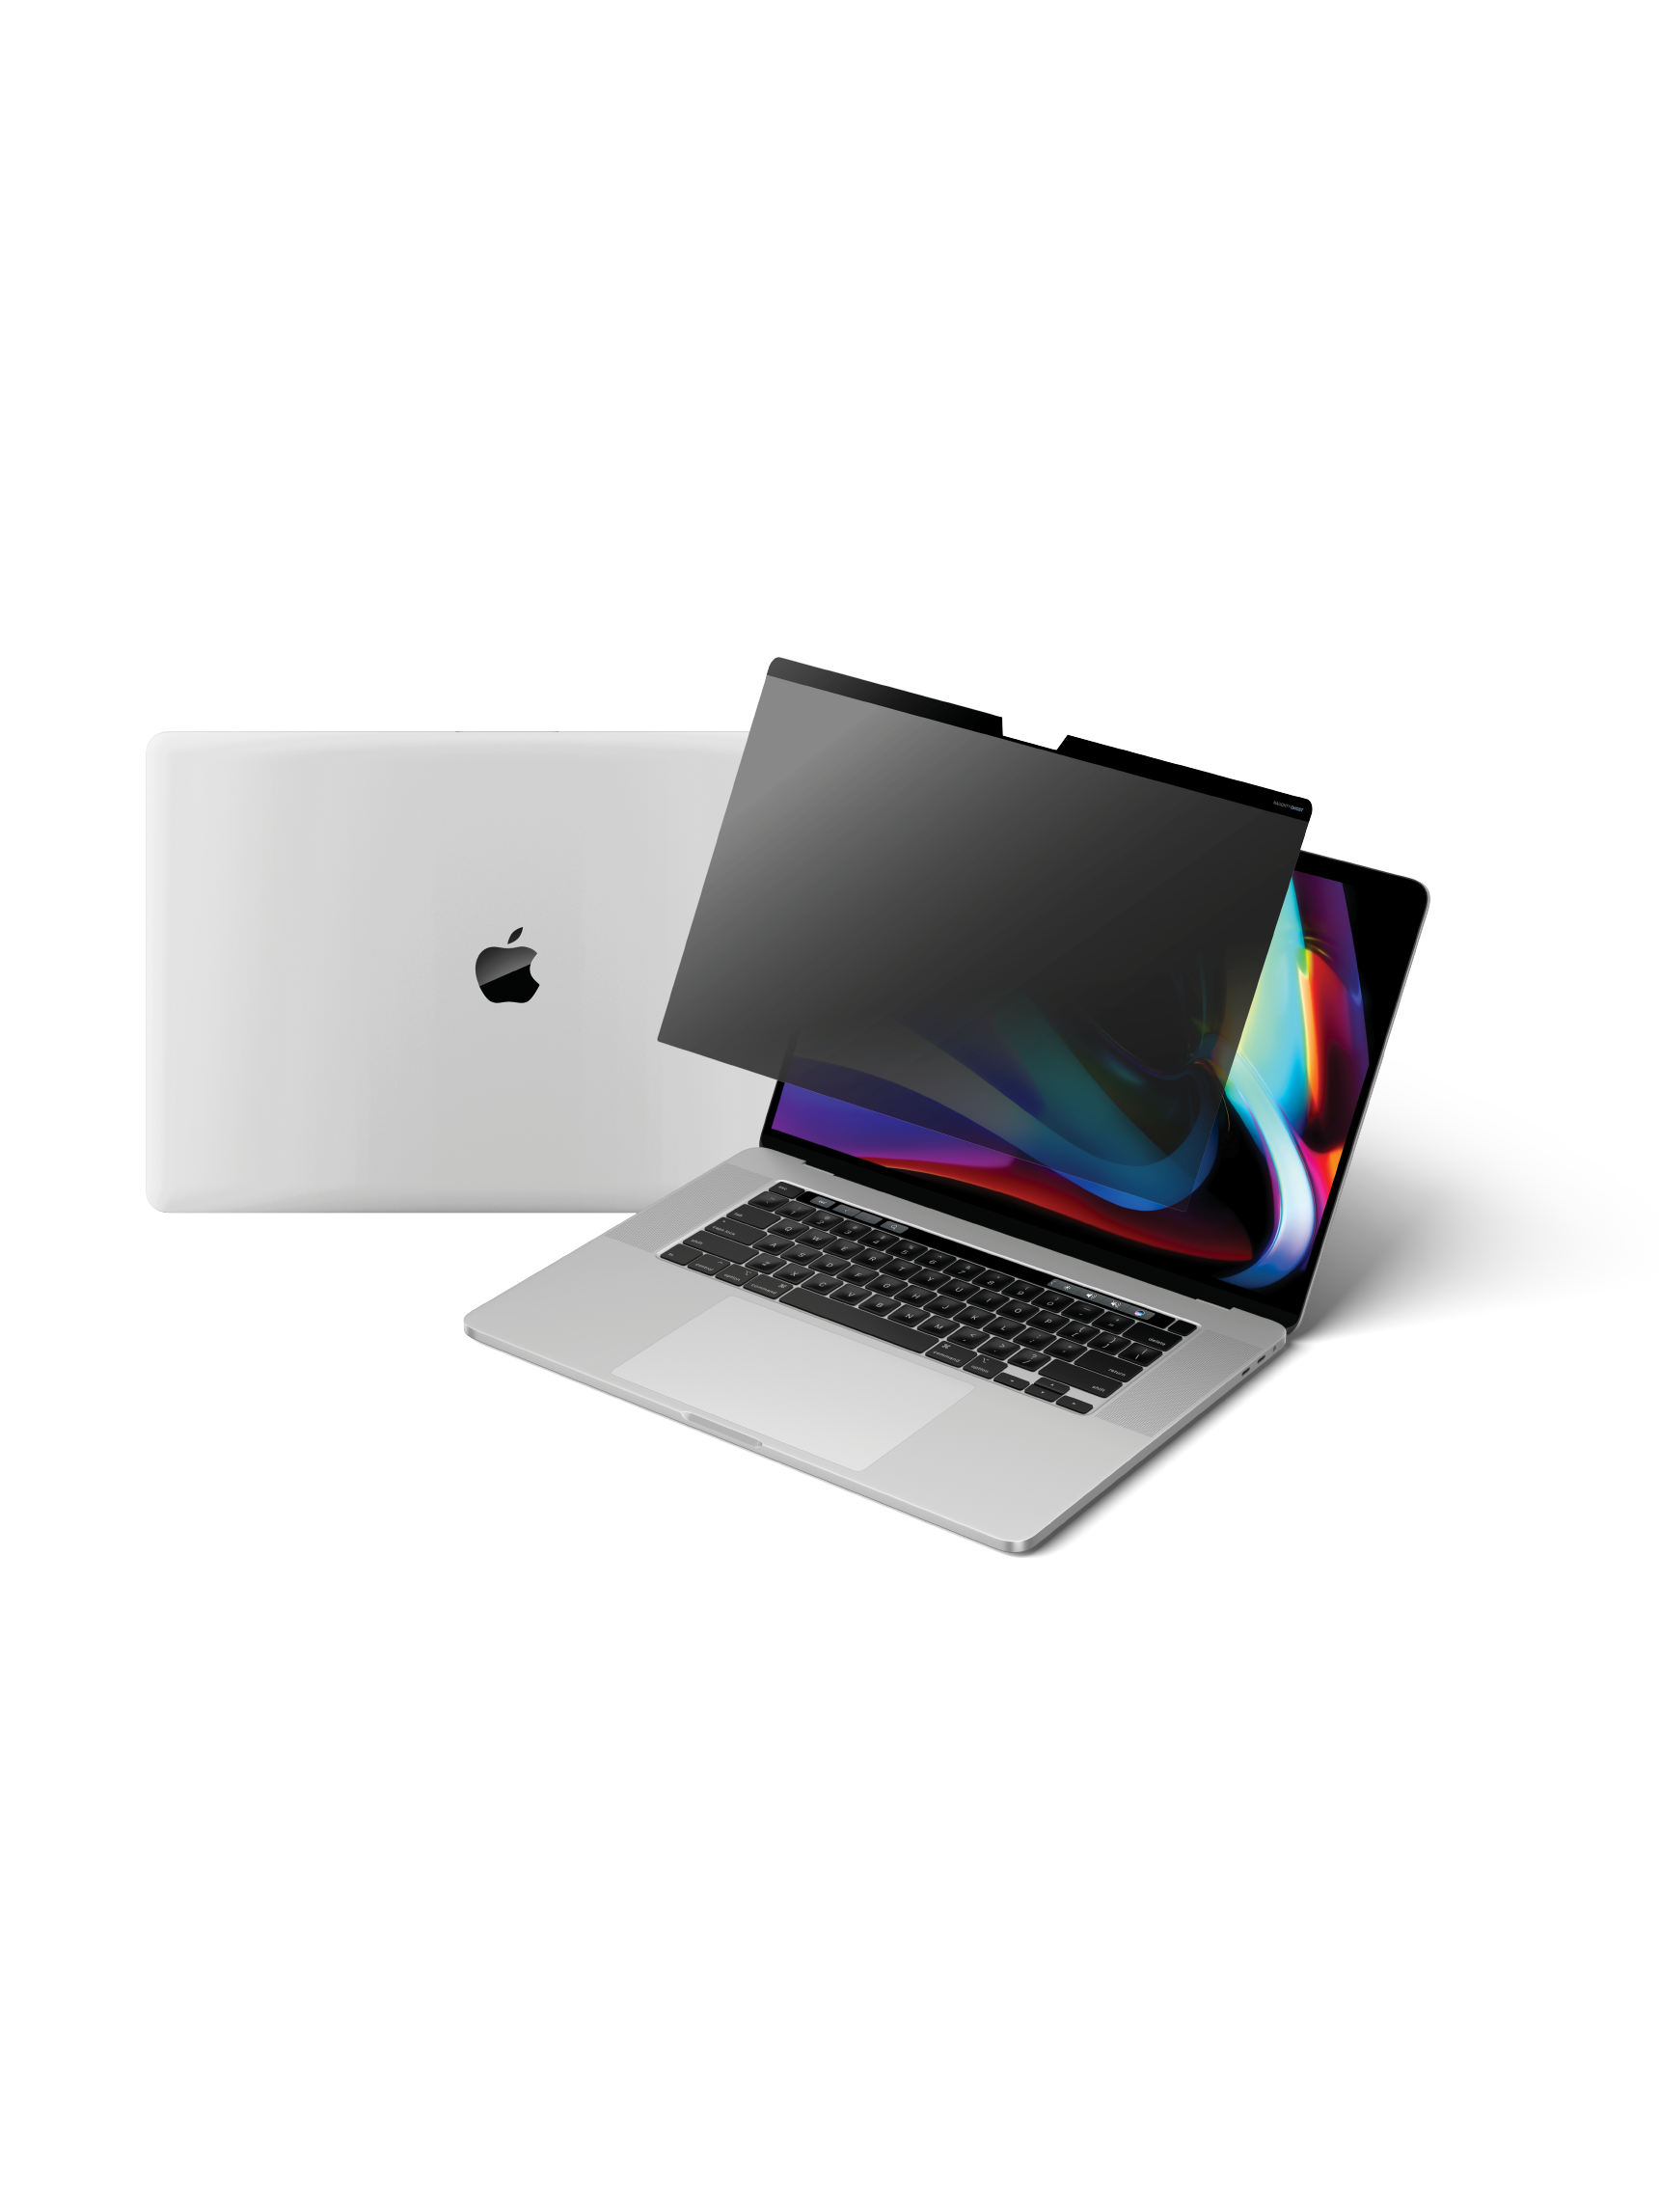 [周邊] 挑選 MacBook Air m2 磁吸防窺片